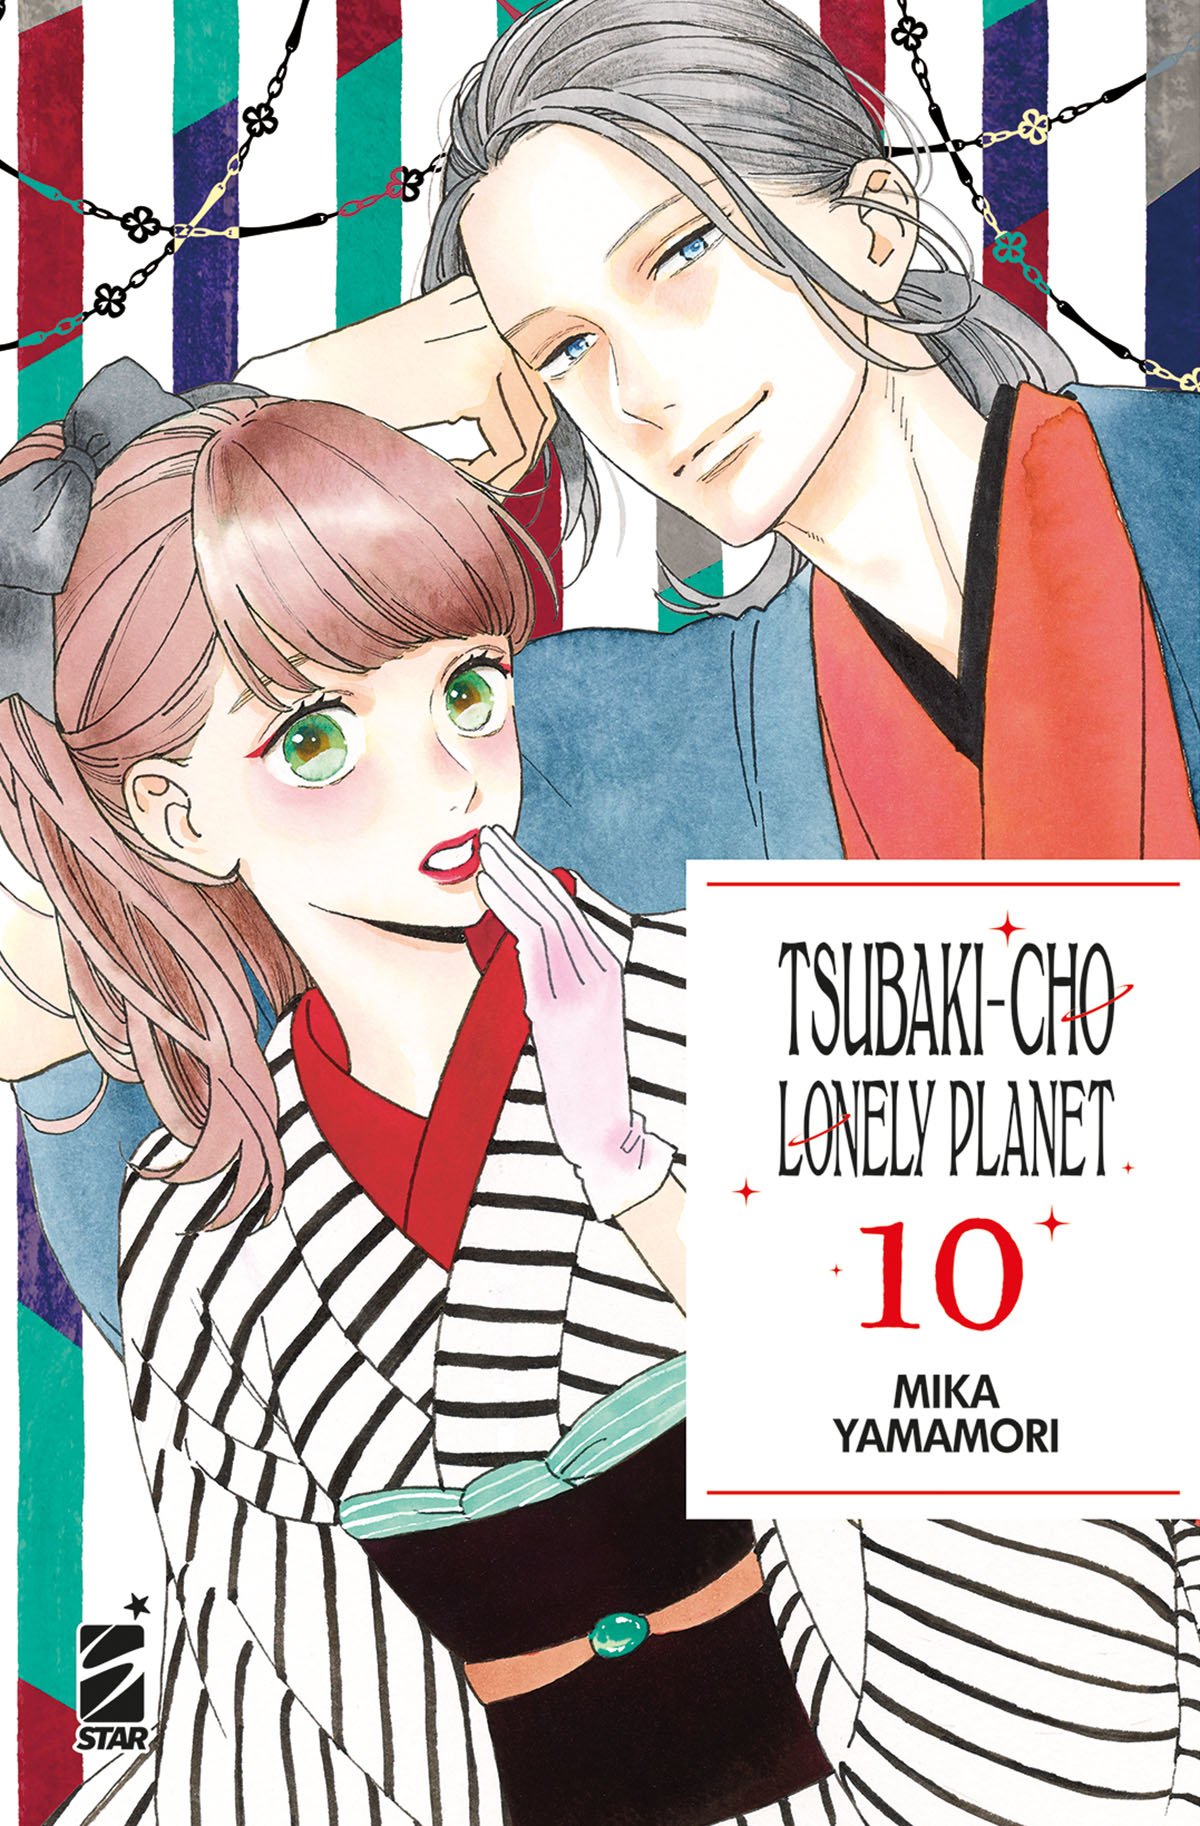 TSUBAKI-CHO LONELY PLANET NEW EDITION 10 DI 14 TURN OVER 270